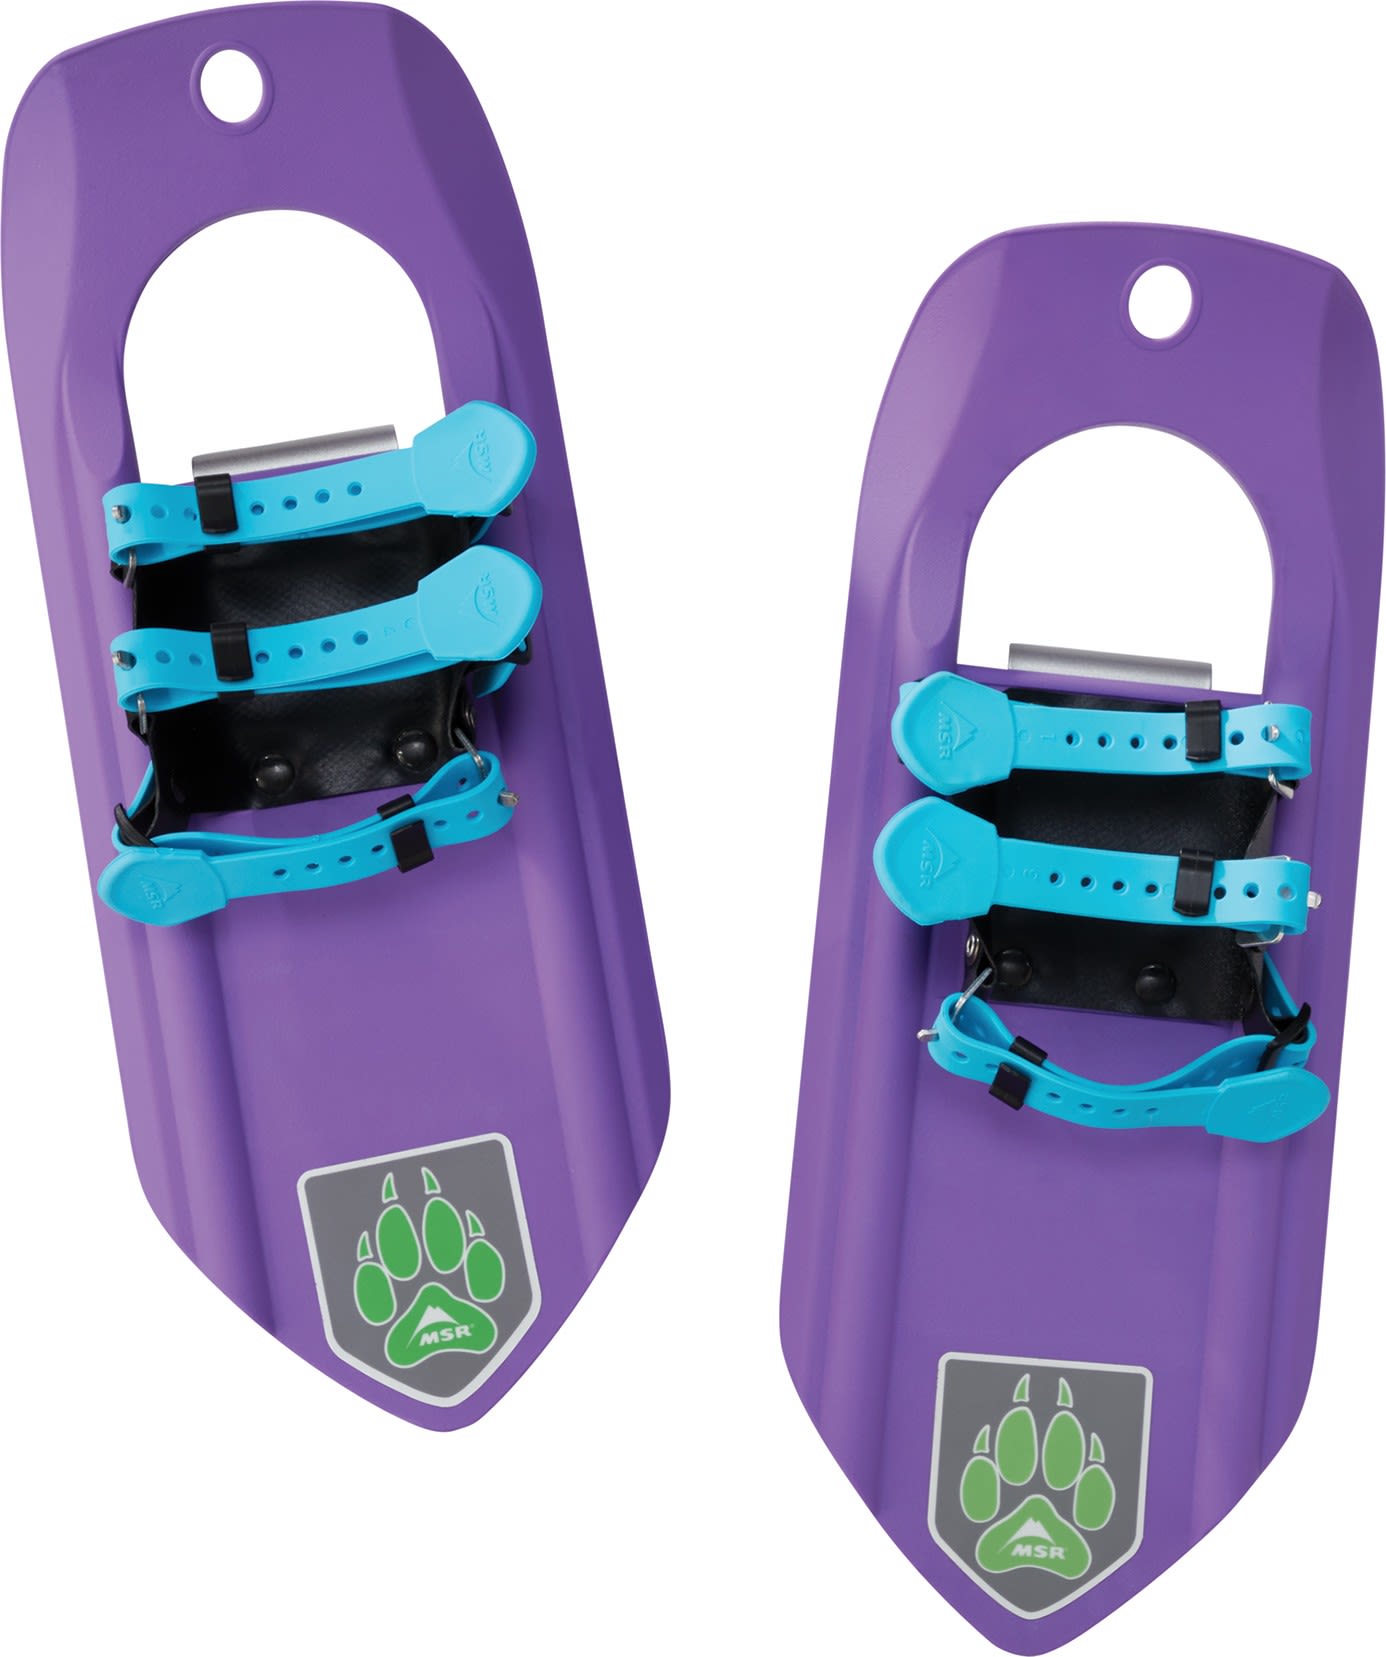 MSR Tyker Lila- Kunststoff-Schneeschuhe- Grsse One Size - Farbe Purple Power unter MSR